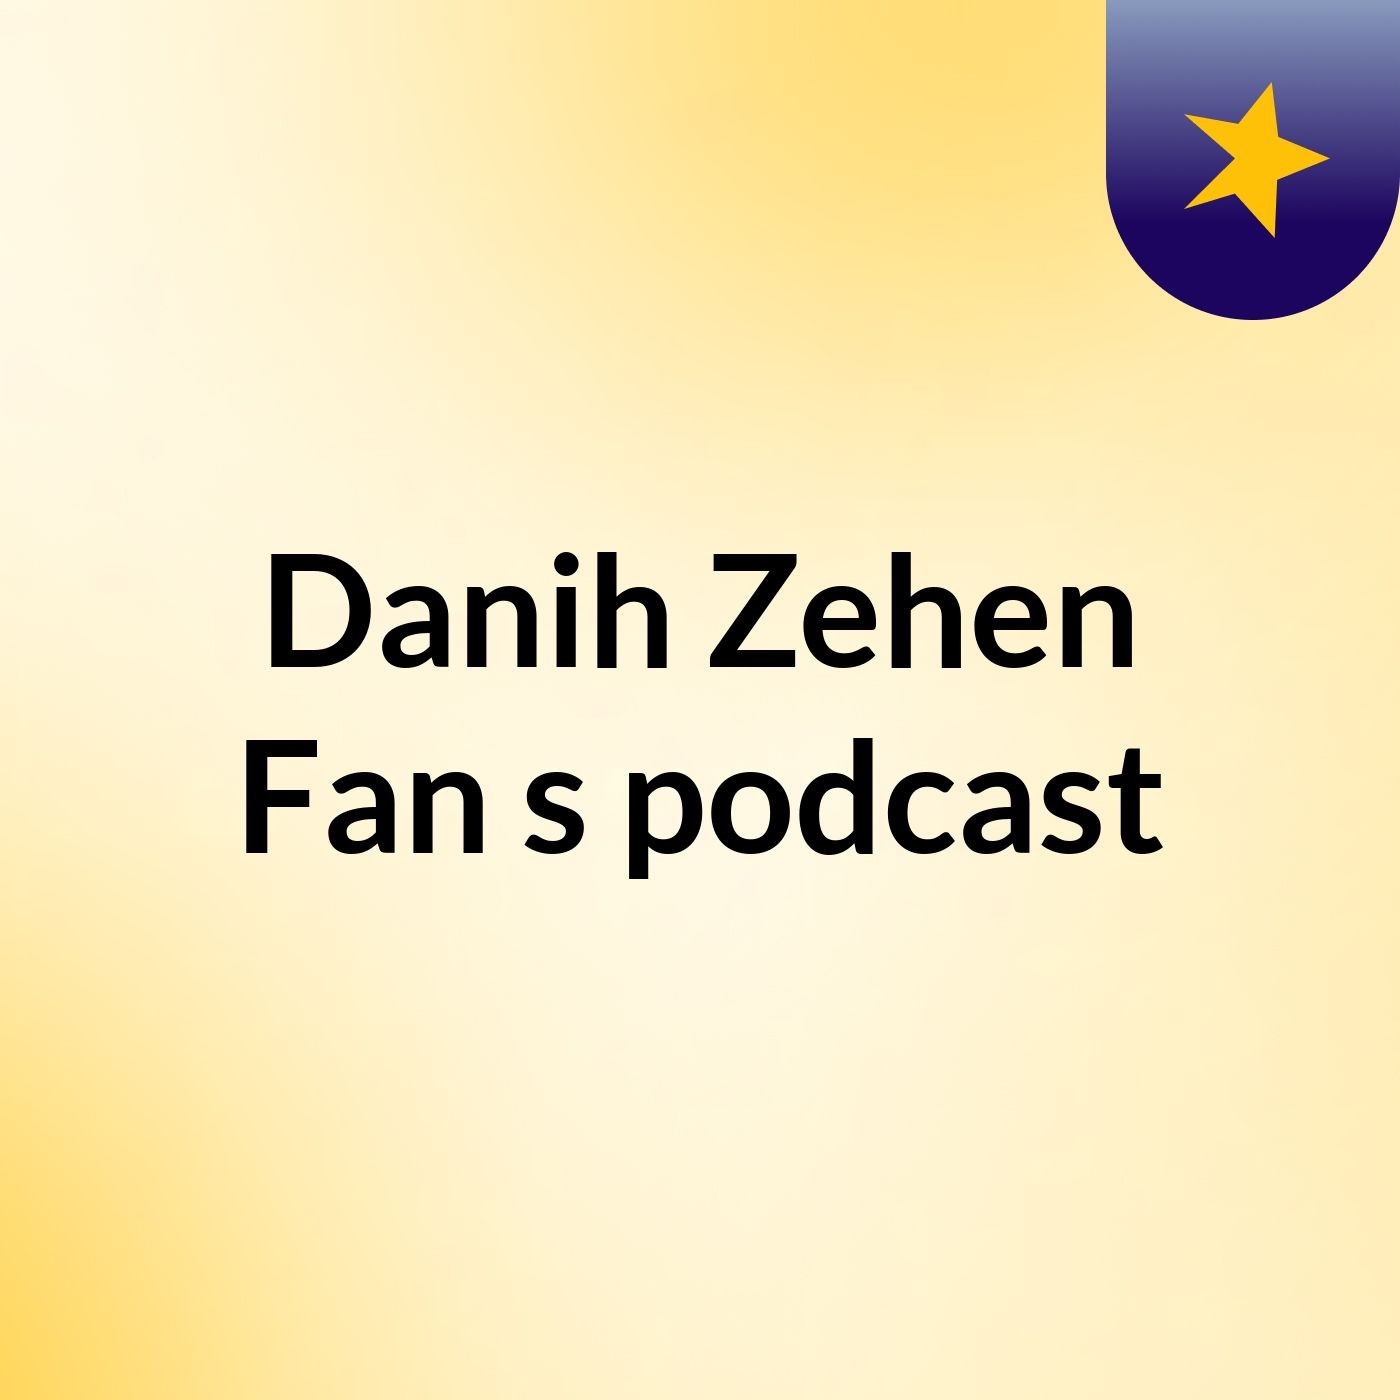 Danih Zehen Fan's podcast